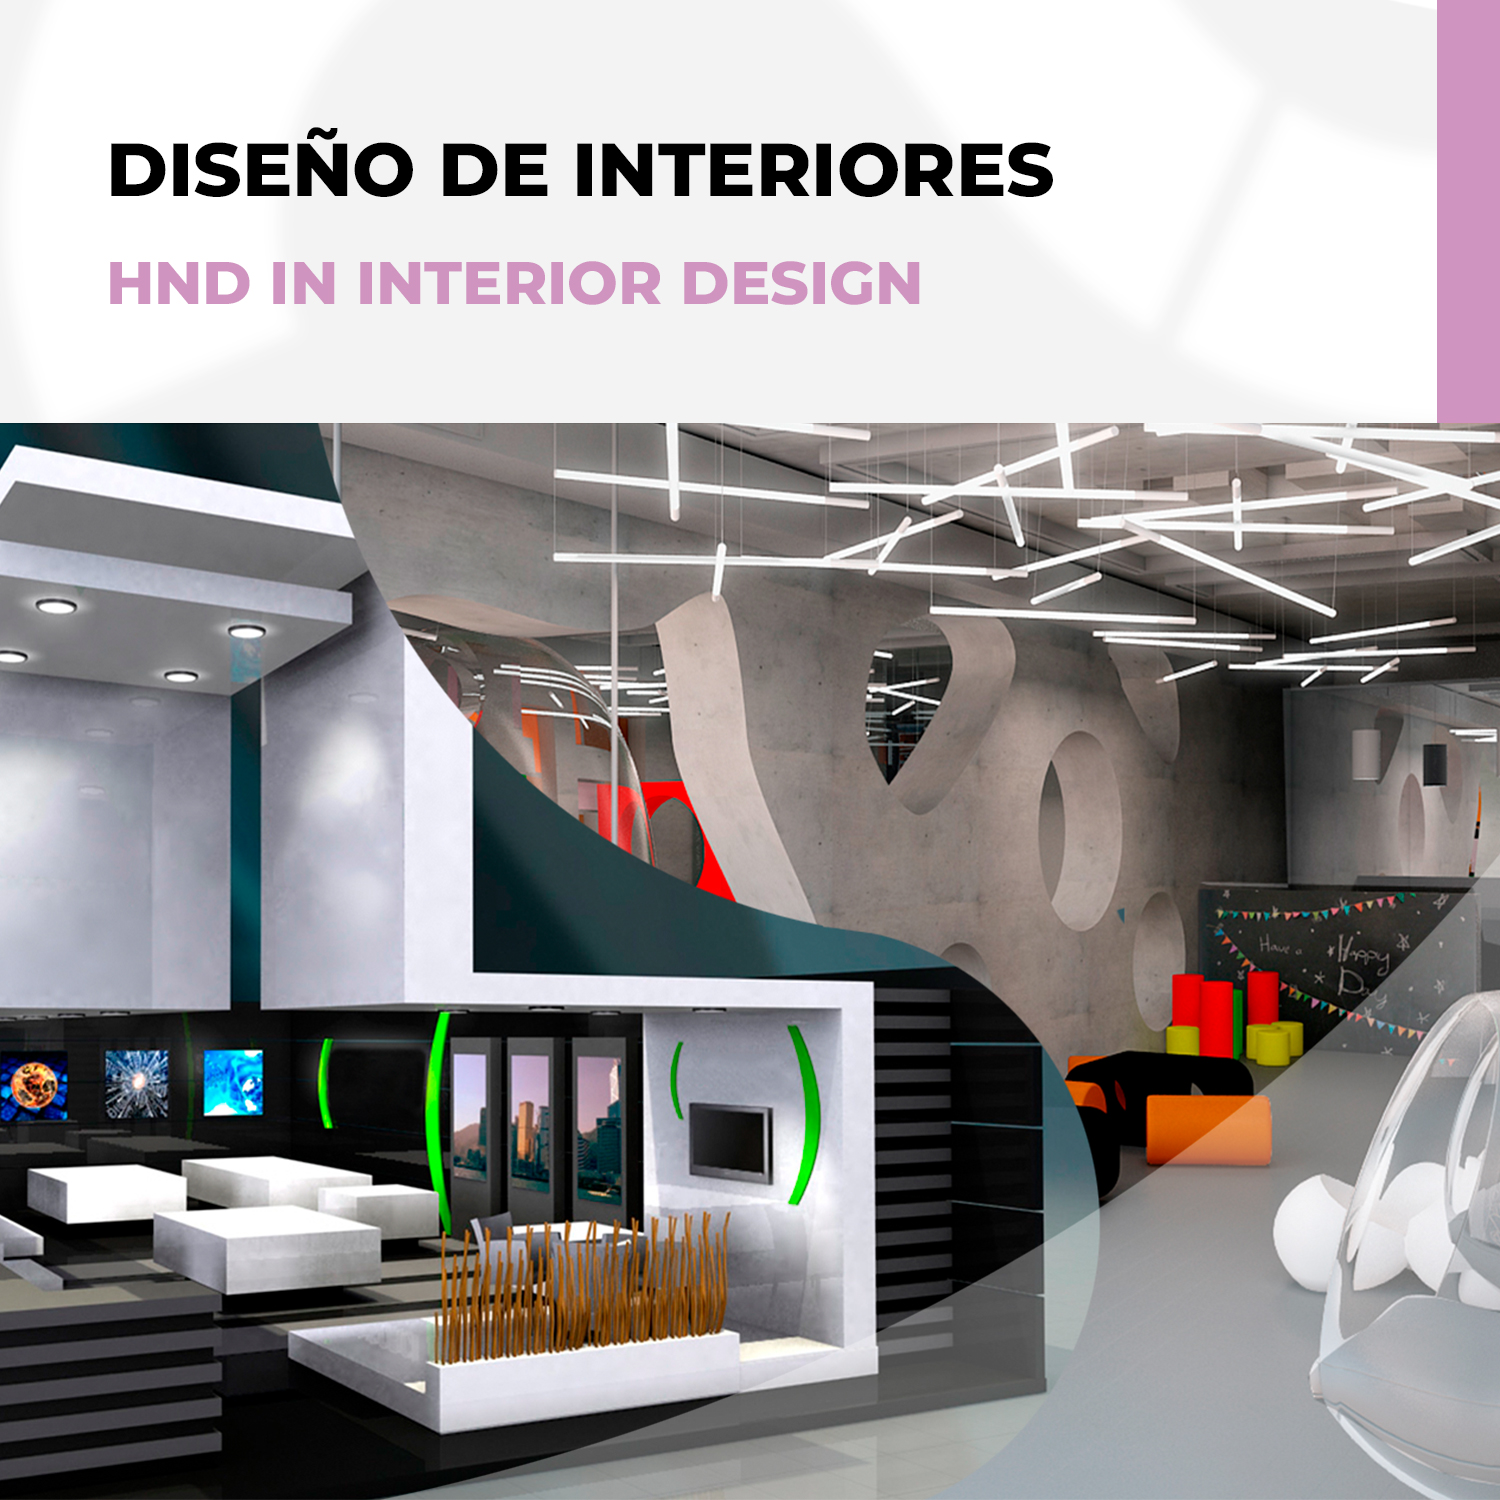 Torbellino Práctico Ocurrencia Reserva de plaza - Diseño de Interiores - Escuela Superior Internacional ::  EsiMurcia ::